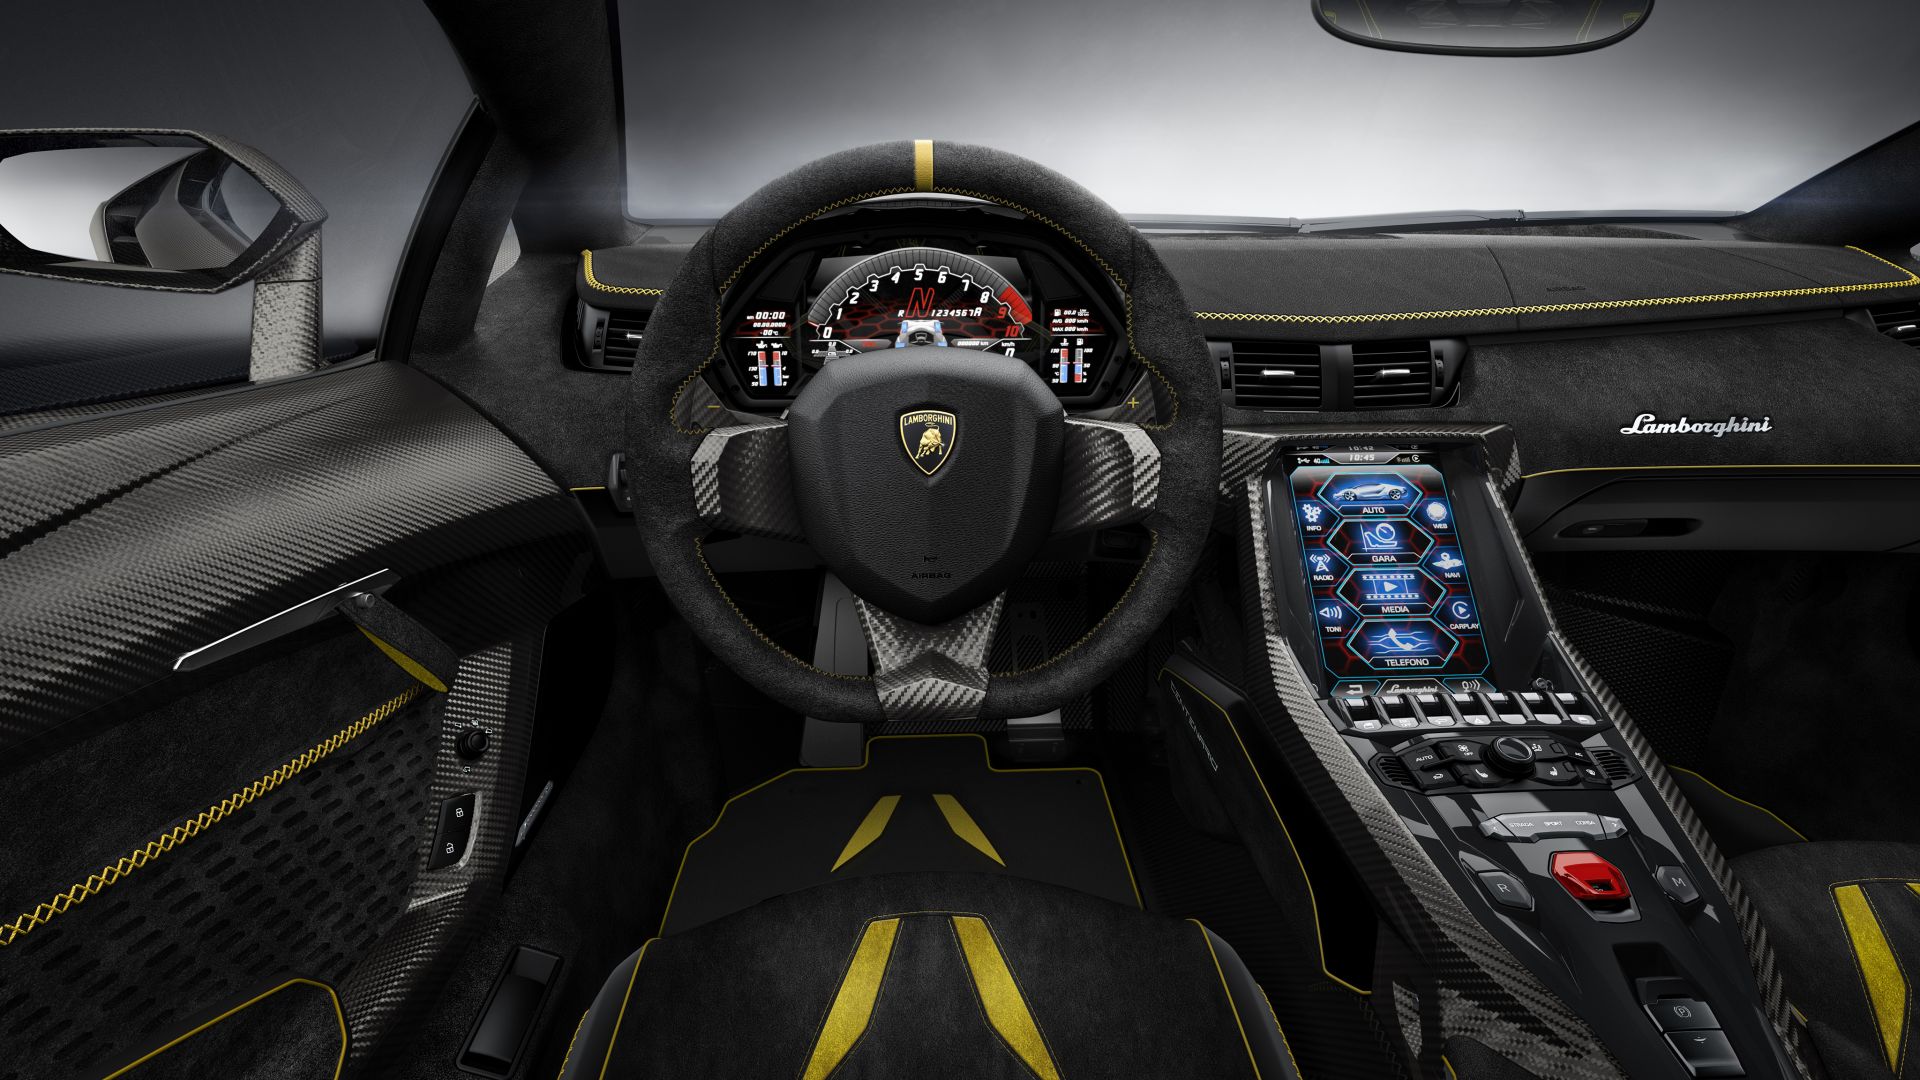 Lamborghini Centenario, Geneva Auto Show 2016, interior (horizontal)